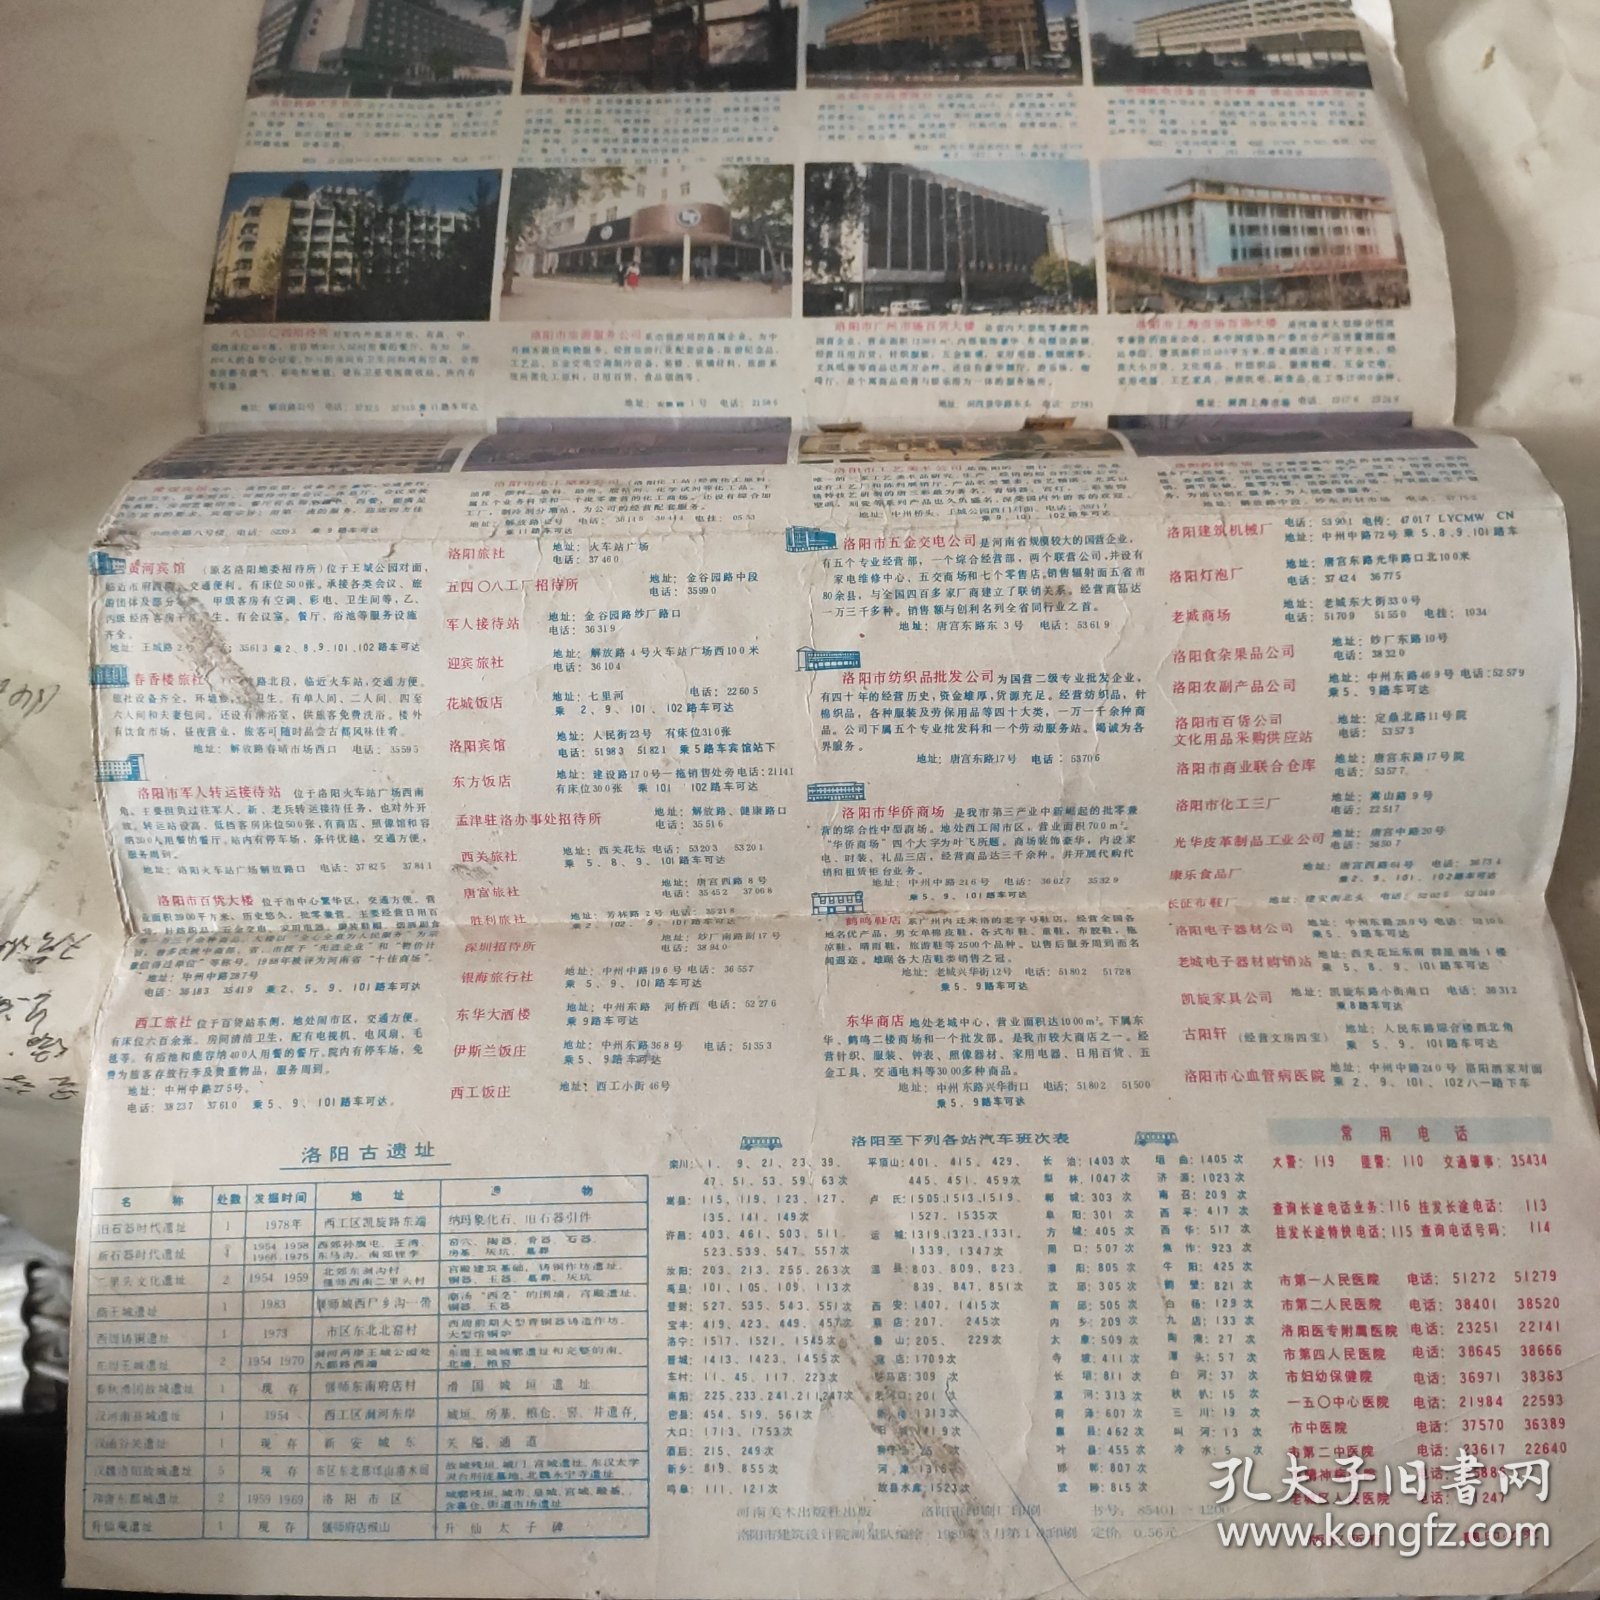 洛阳市区交通旅游图1989